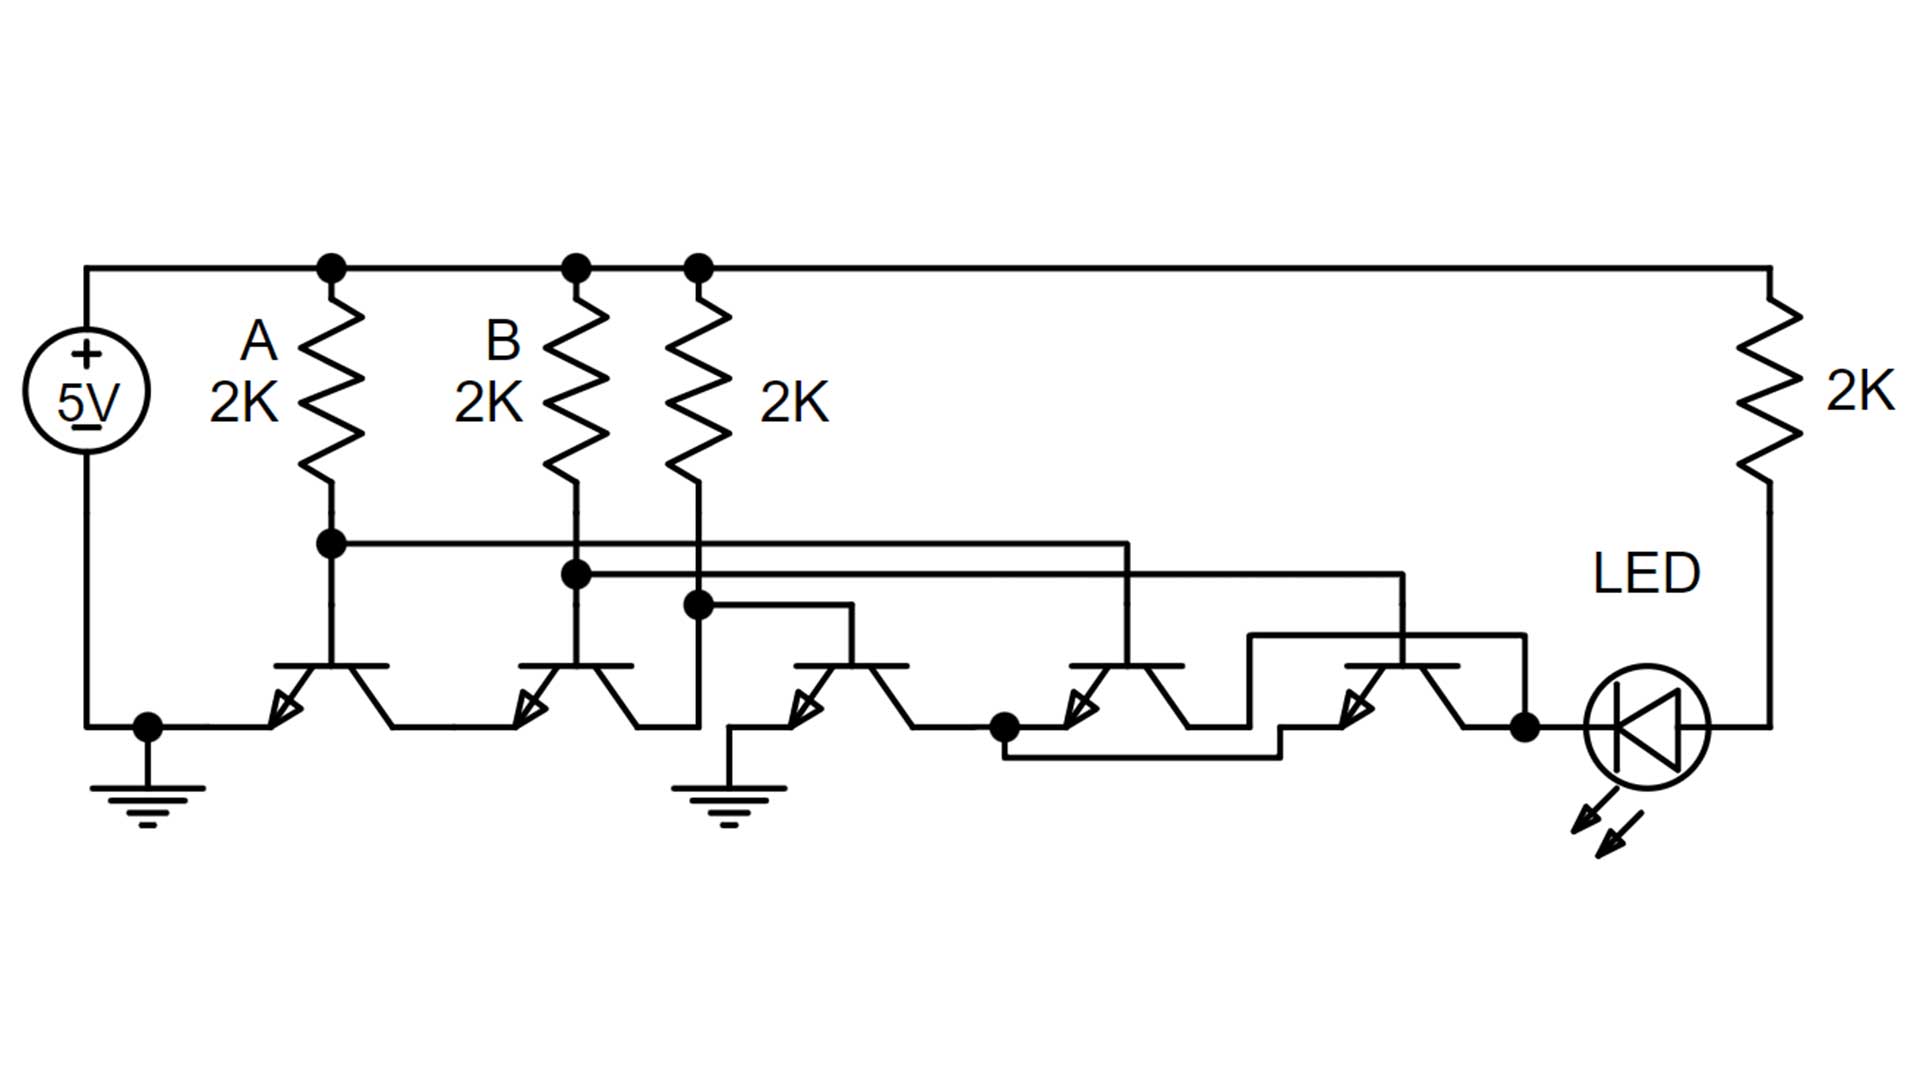 xor gate 1 circuit diagram